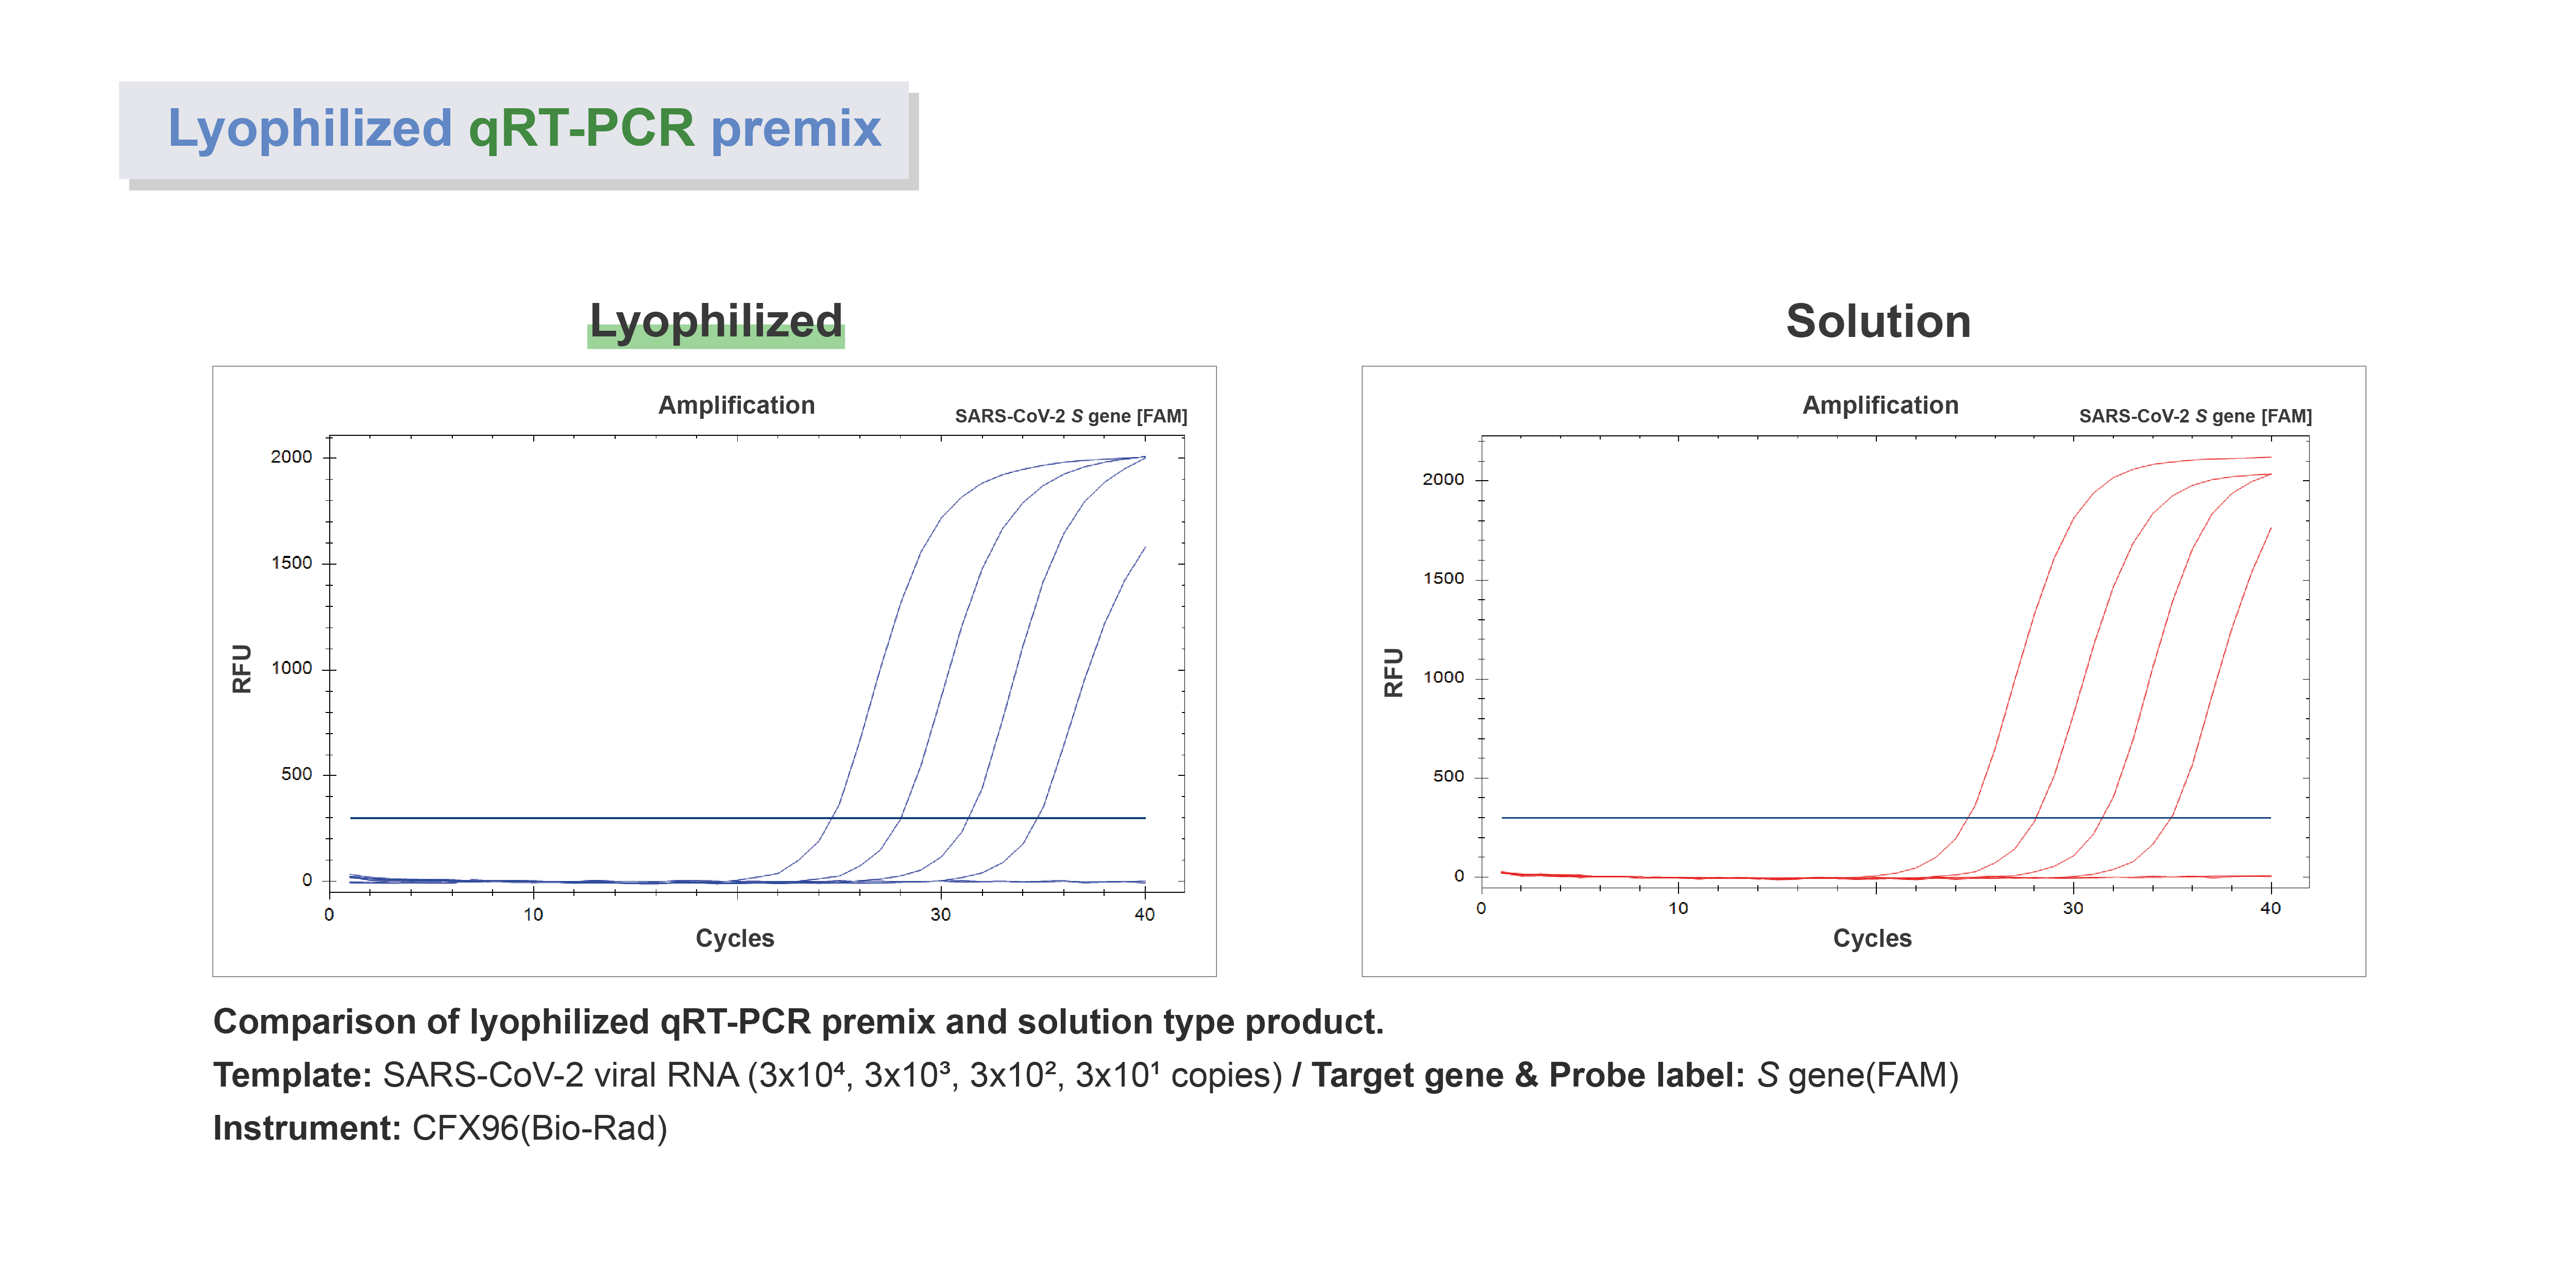 LDFQR_Figure. Comparison of lyophilized qRT-PCR premix and solution type product.